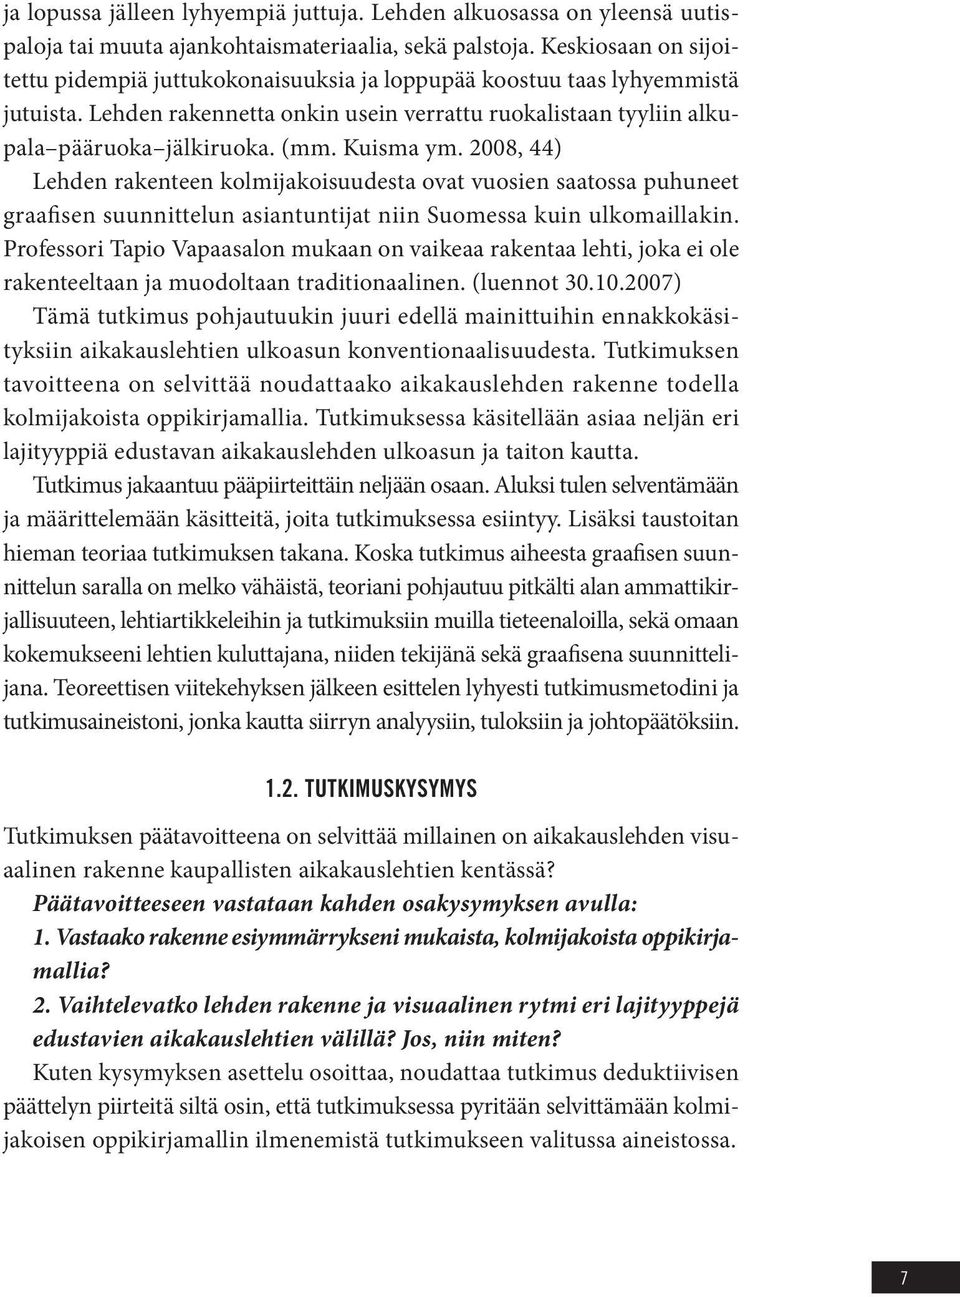 Kuisma ym. 2008, 44) Lehden rakenteen kolmijakoisuudesta ovat vuosien saatossa puhuneet graafisen suunnittelun asiantuntijat niin Suomessa kuin ulkomaillakin.